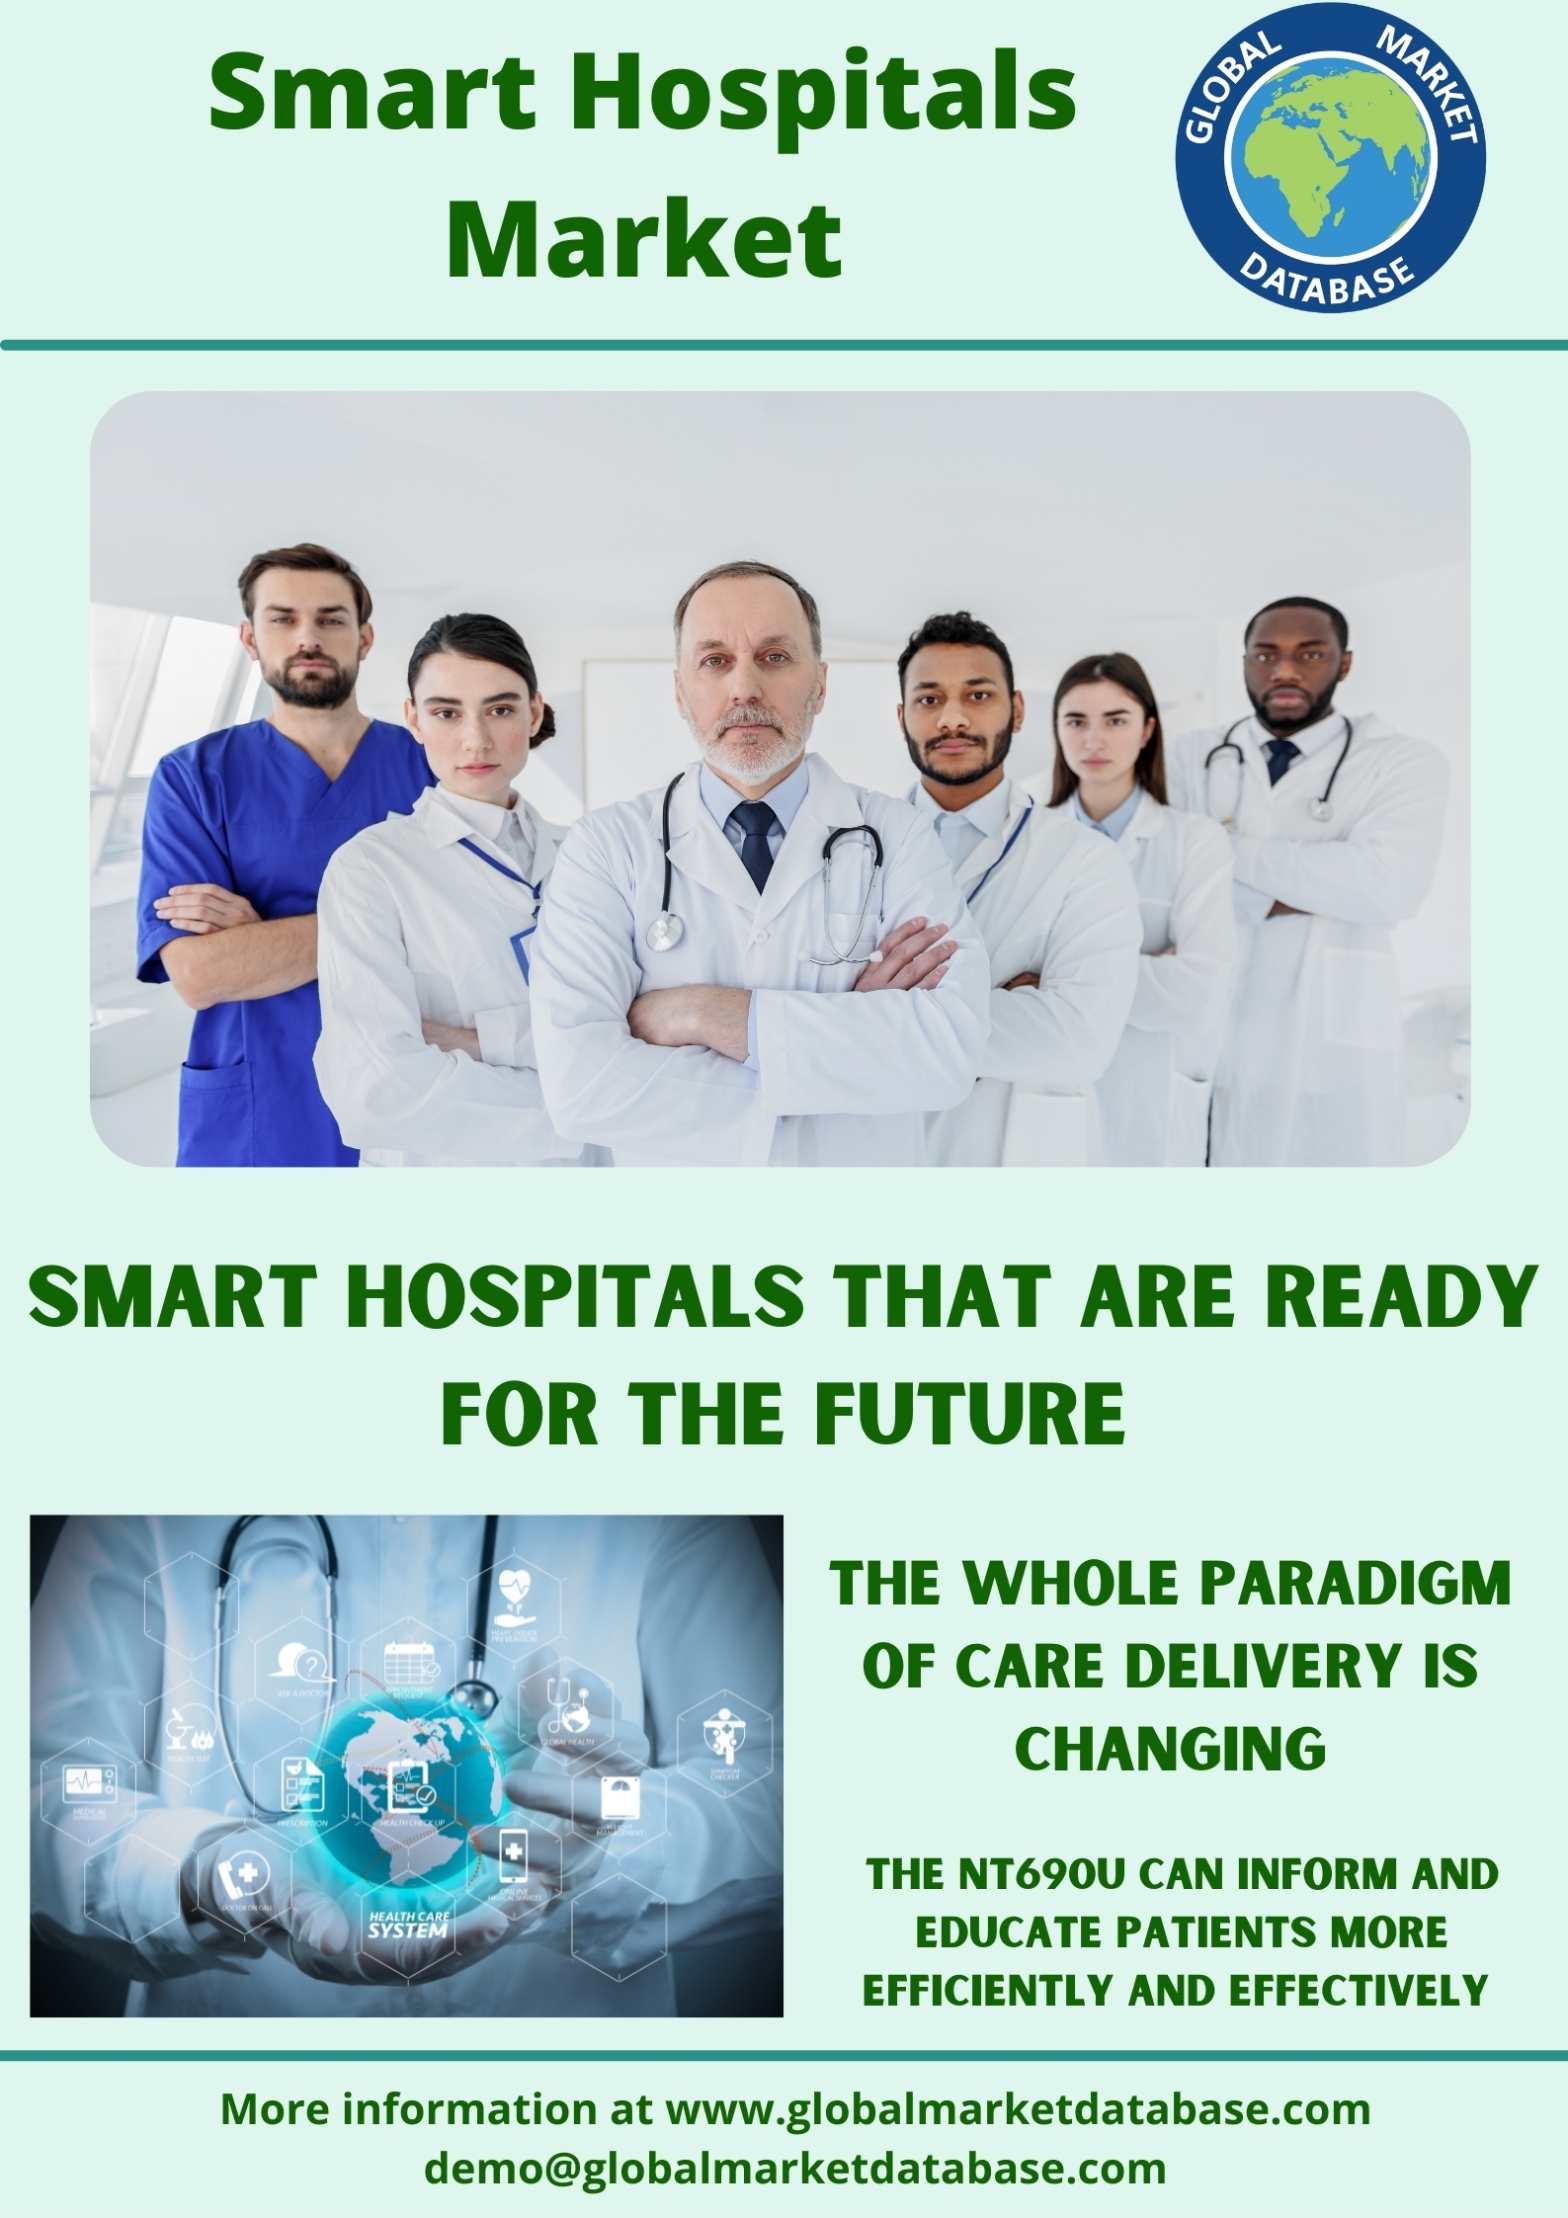 Smart Hospitals Market research